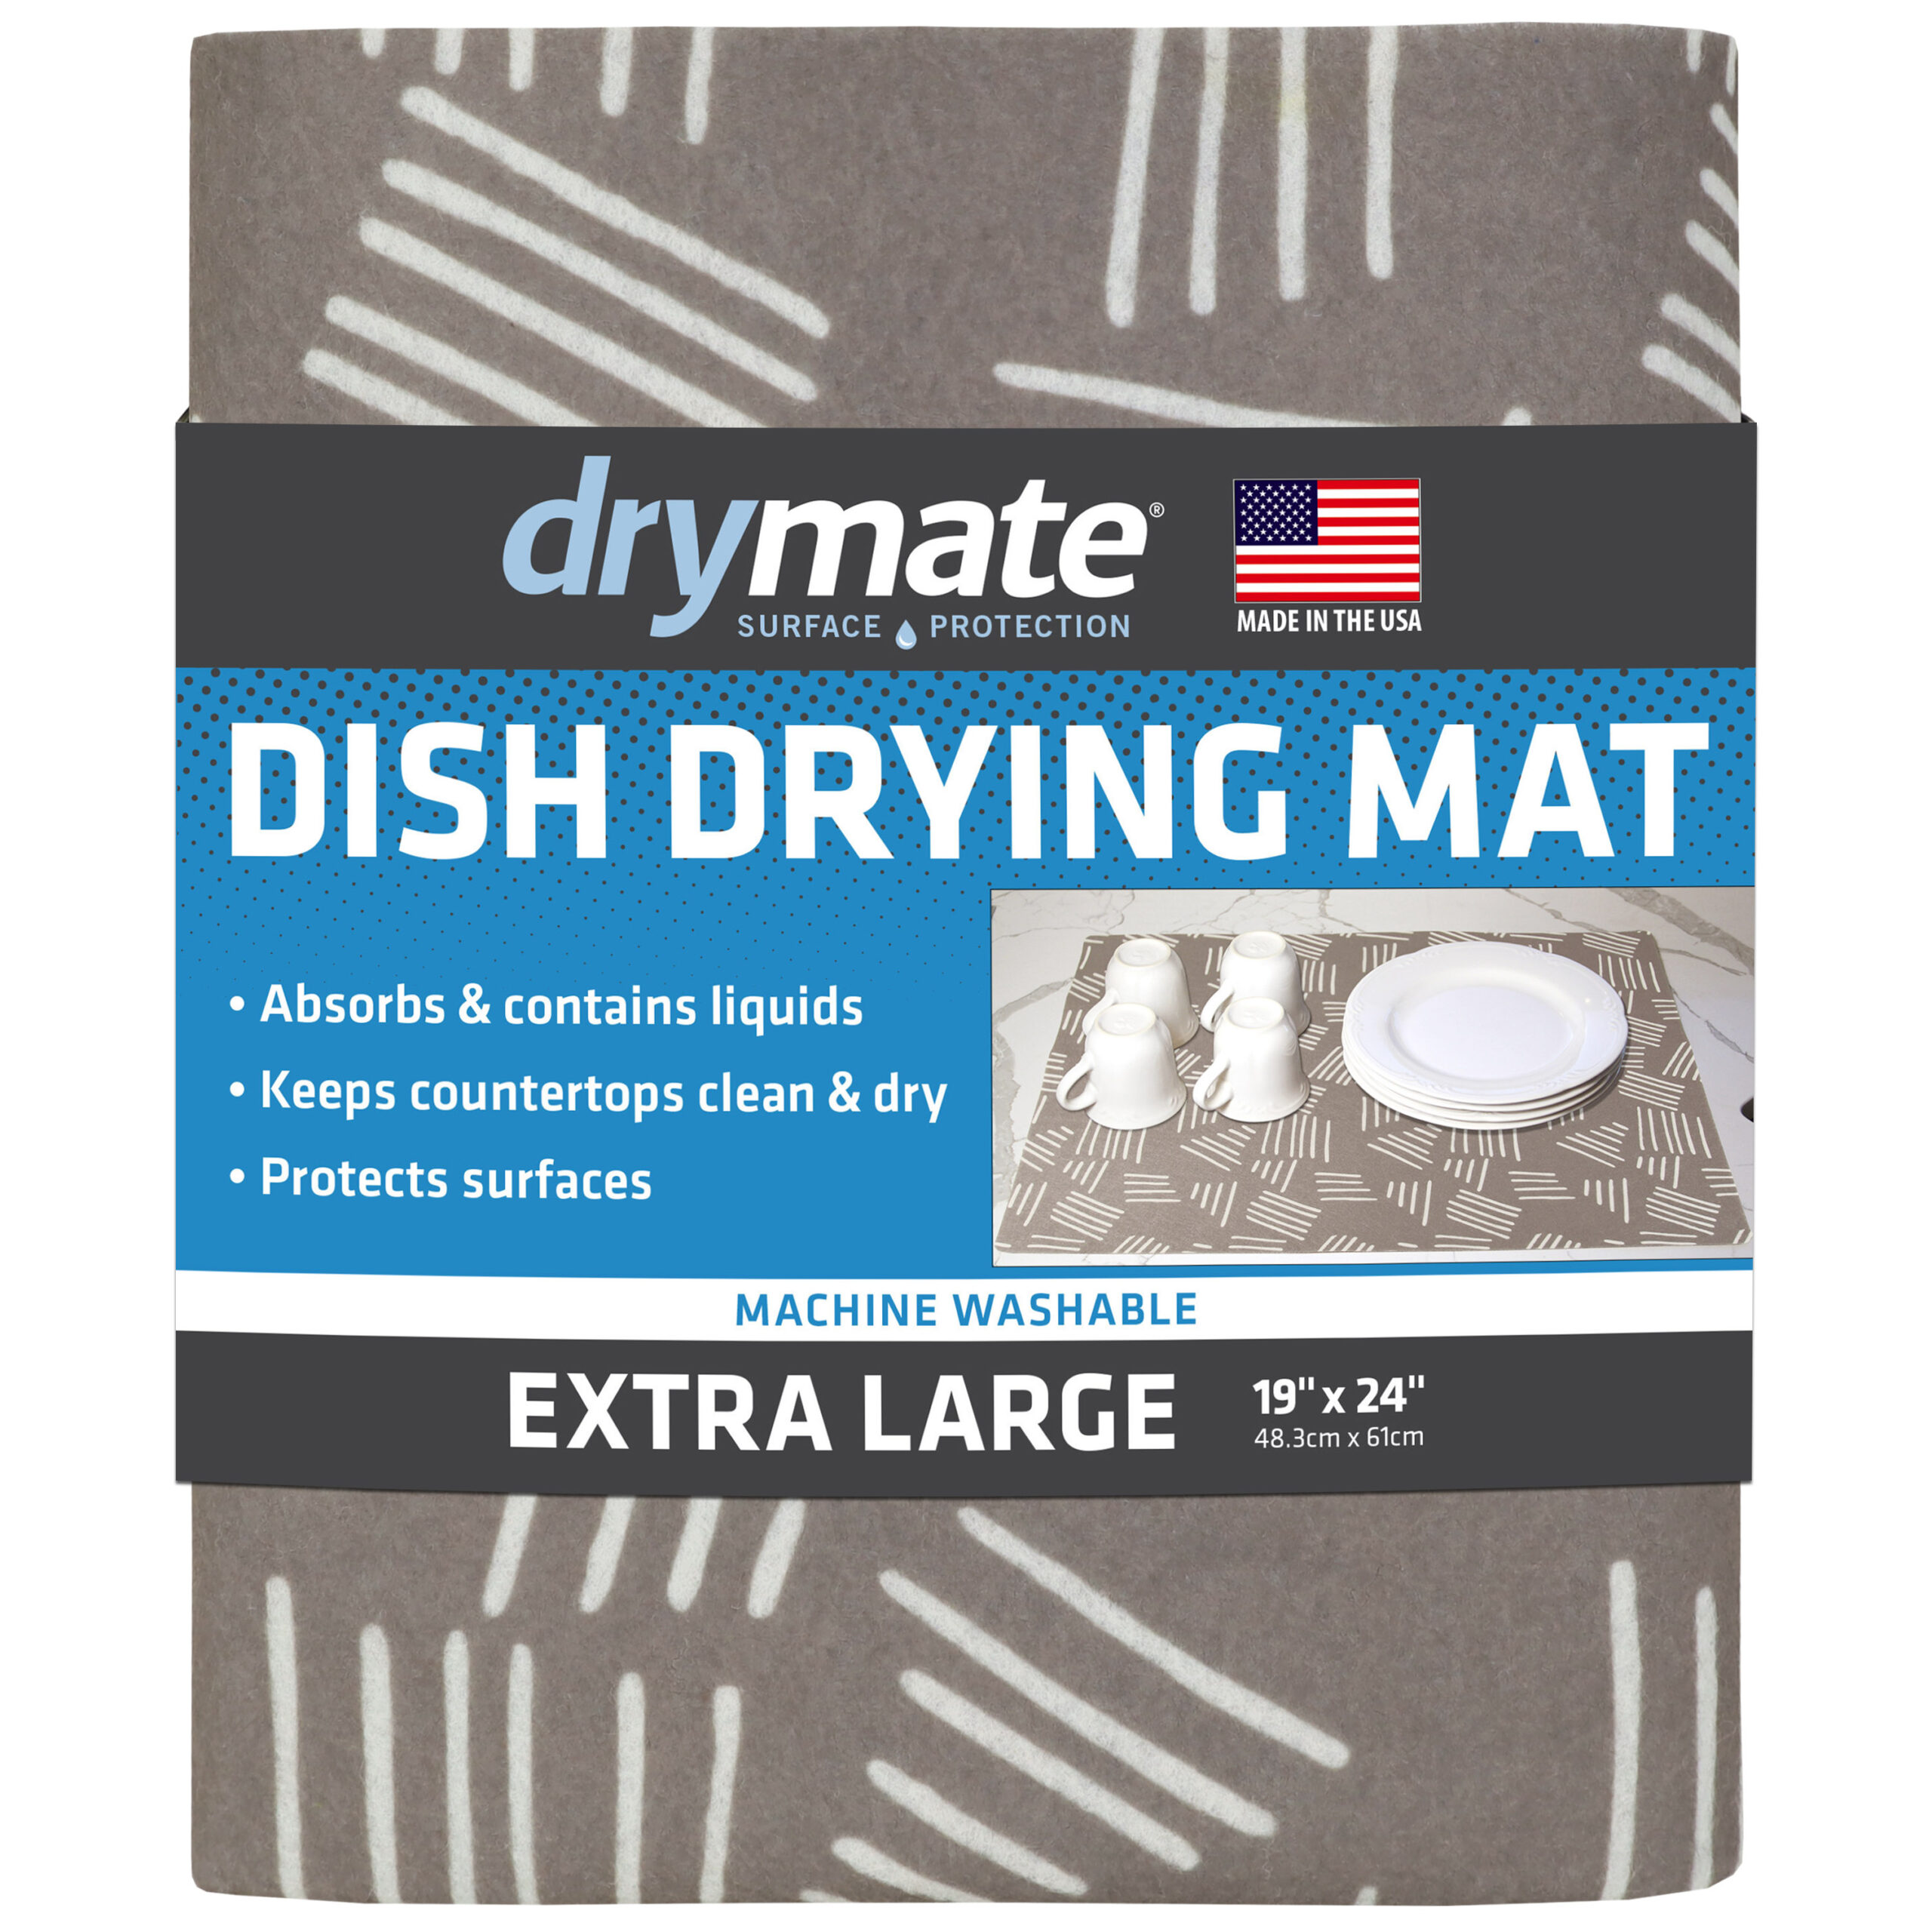 KDIJET Dish Drying Mat 2 Pack XL Cream Cross Sculpted Microfiber Ultra Absorbent Kitchen Drying Mat